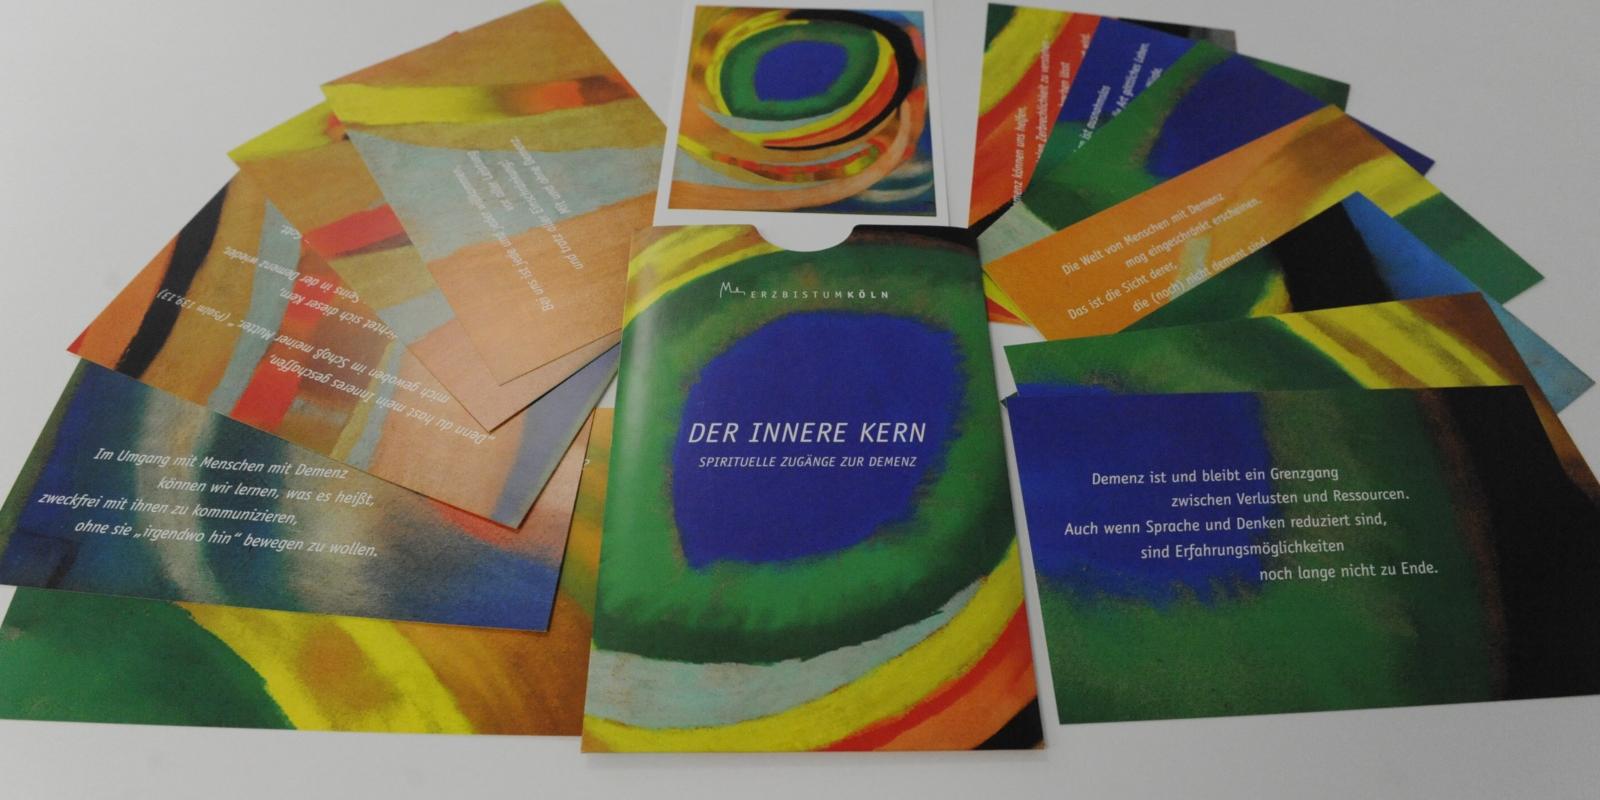 Das Kartenset 'Der innere Kern' beinhaltet 14 Postkarten - 12 davon mit Bildern und Impulsen